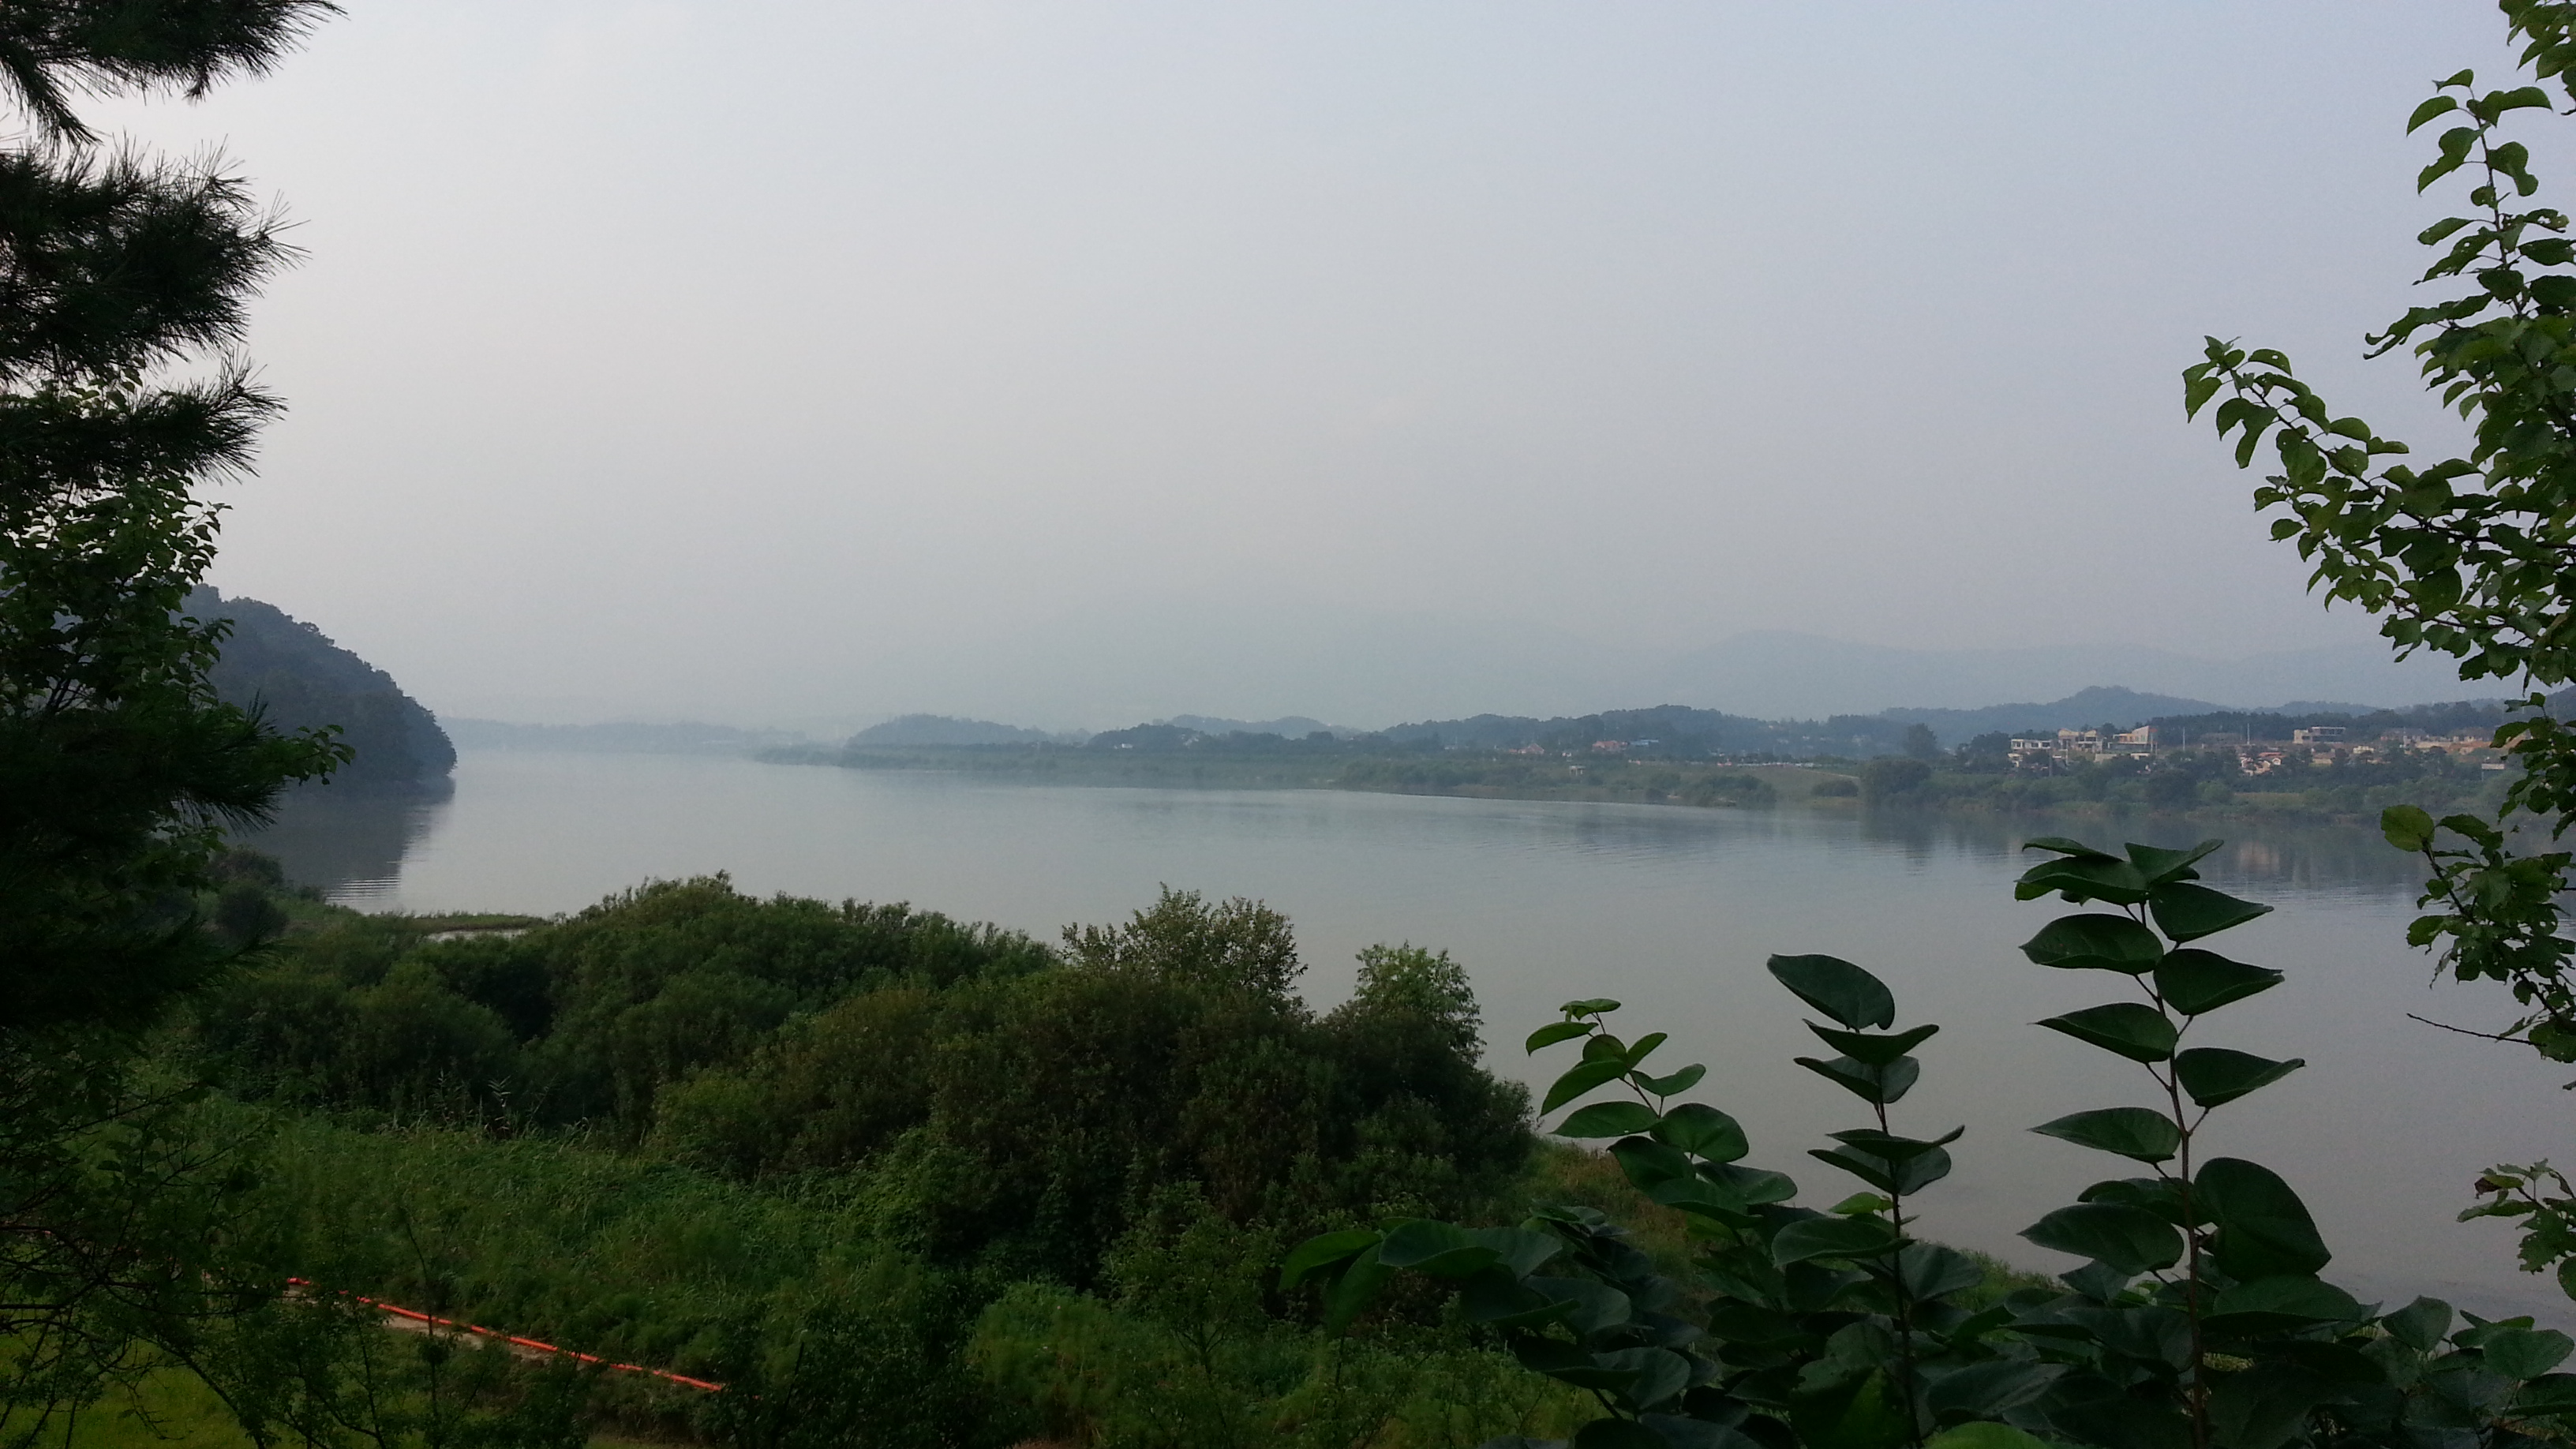 20130808_175057.jpg : 남한강